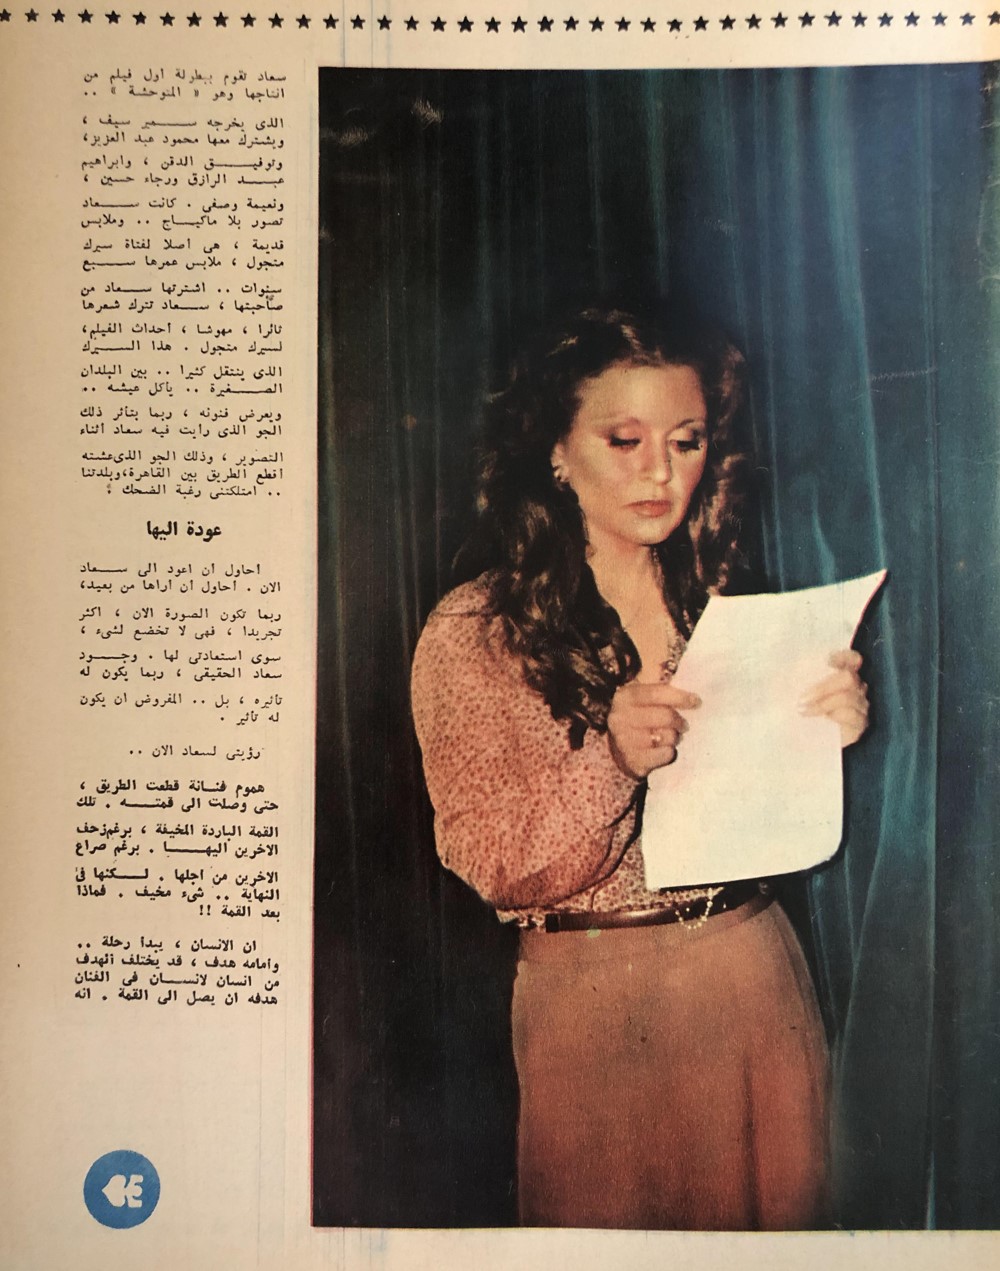 مقال صحفي : هموم سعاد بعد أن وصلت للقمة 1978 م 262